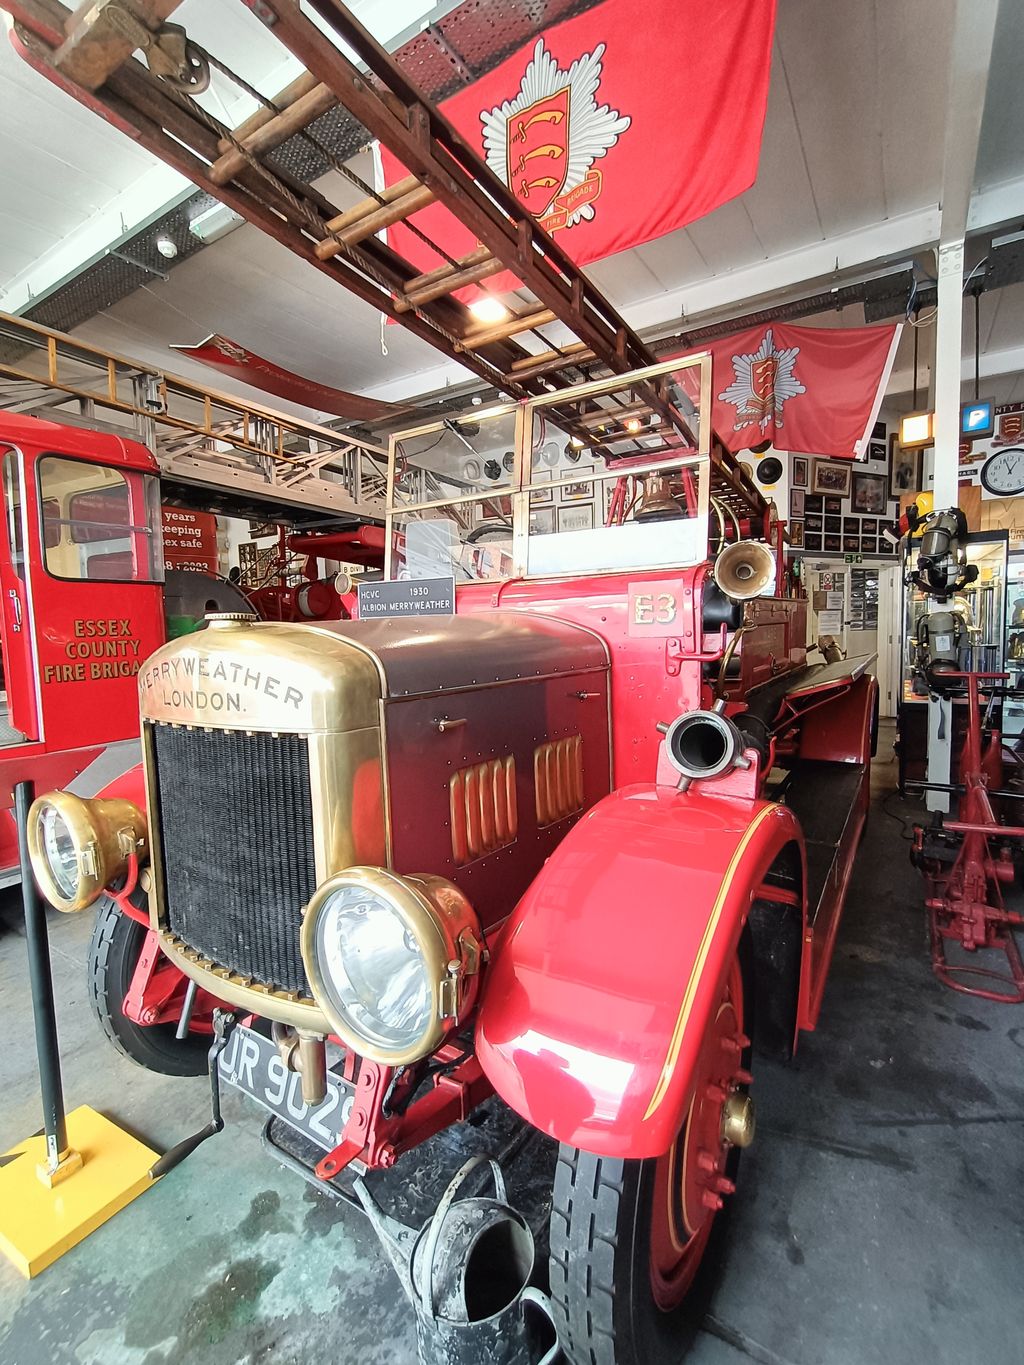 Essex Fire Museum